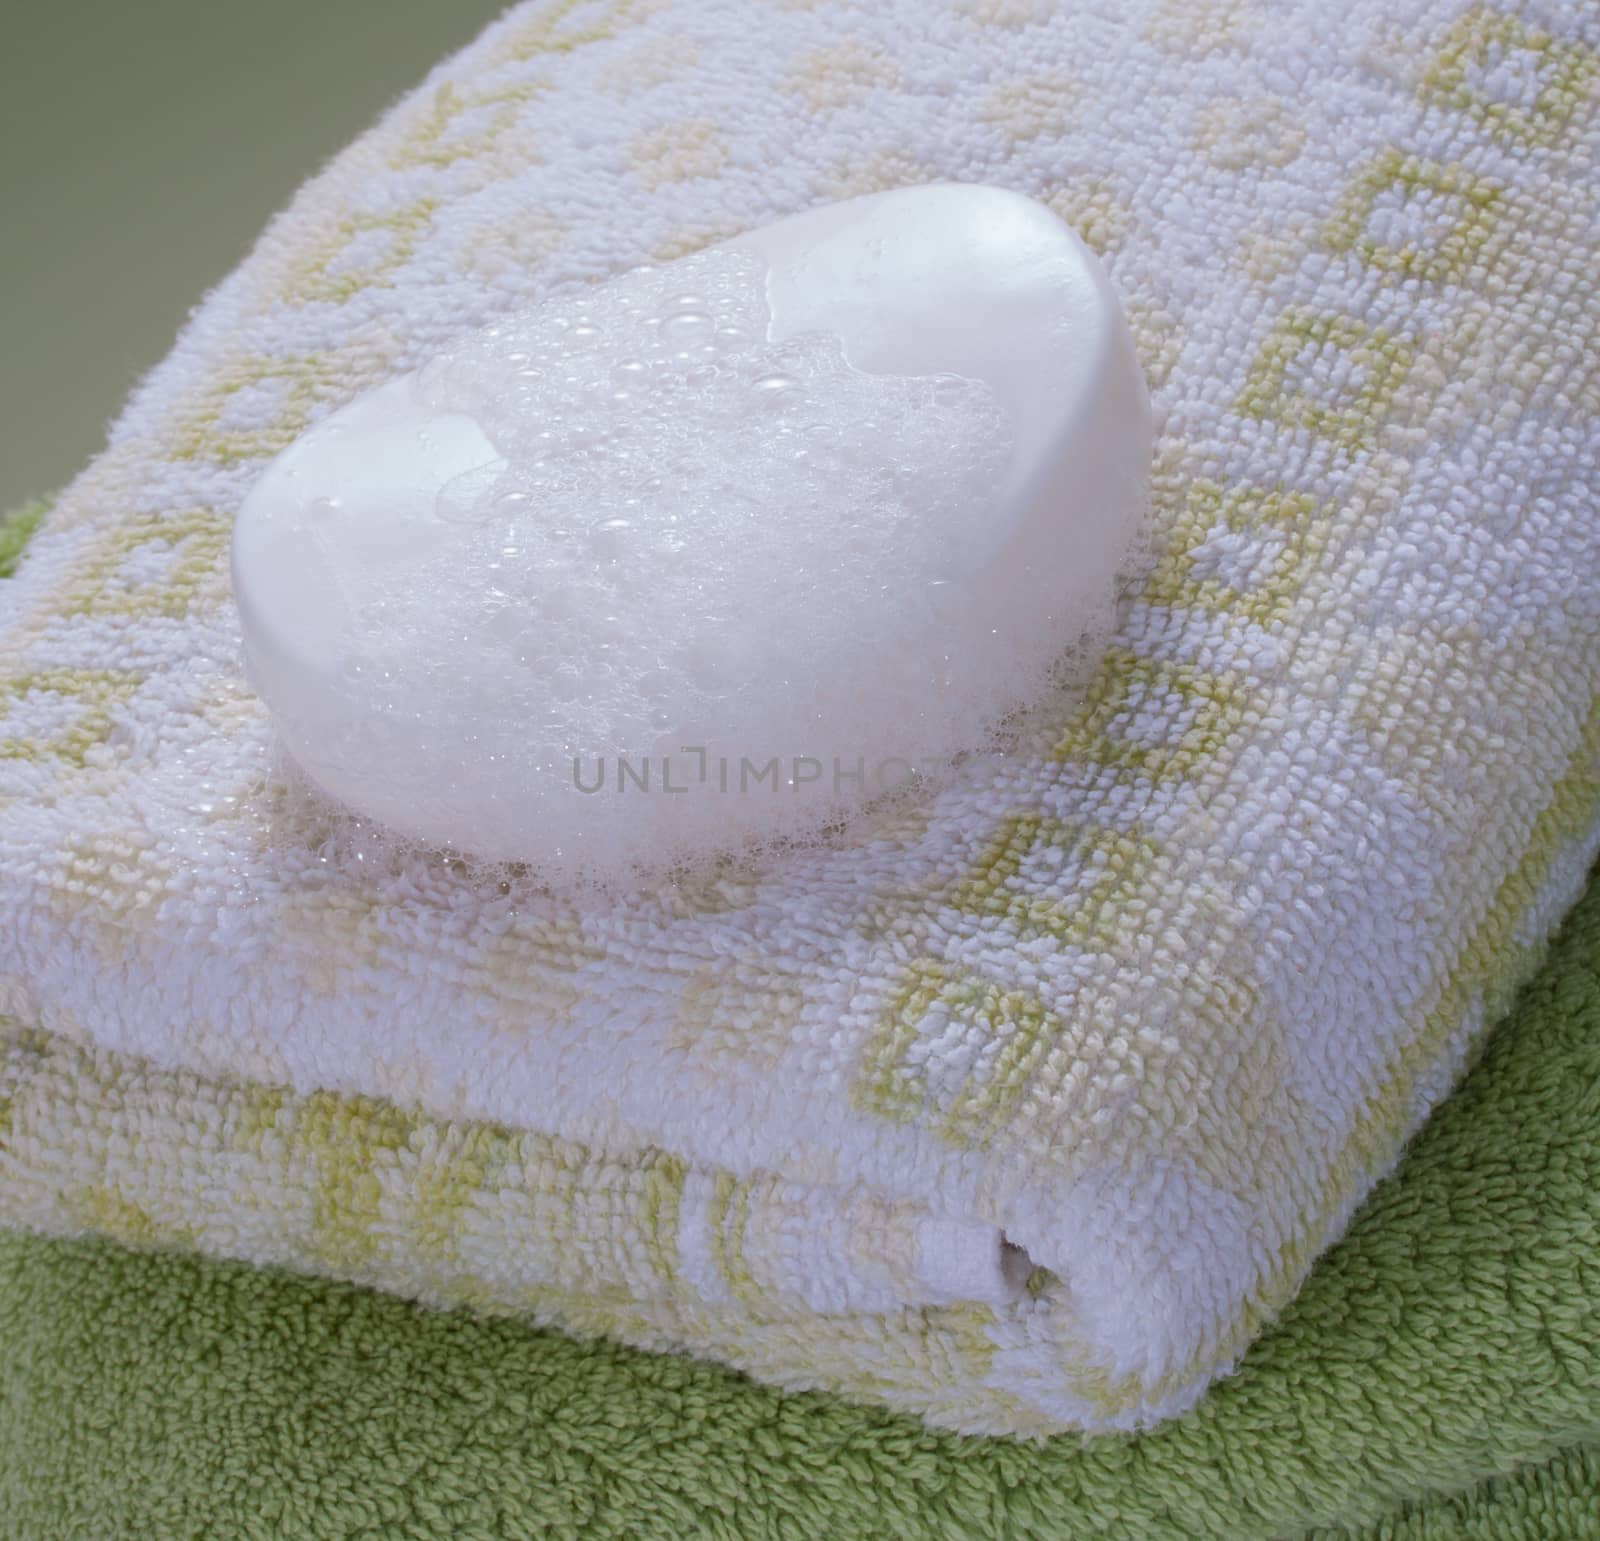 white wet foamy soap bar on bath towel